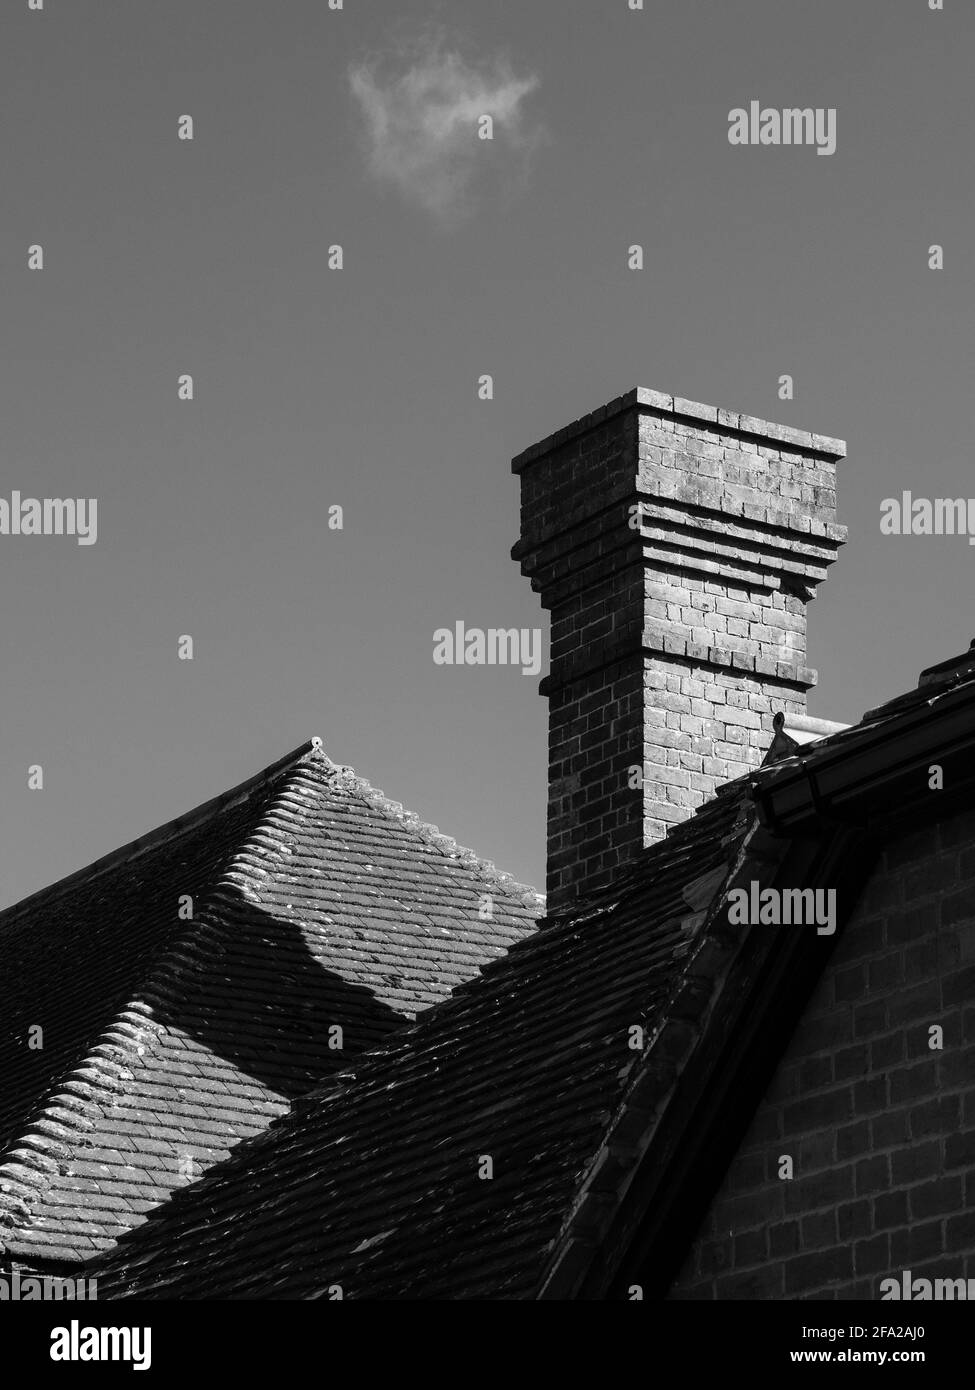 Diagonali, verticali e orizzontali su un'immagine in bianco e nero dei tetti e un camino a Westbury, Wiltshire, Inghilterra, UK., con una nuvola spia. Foto Stock